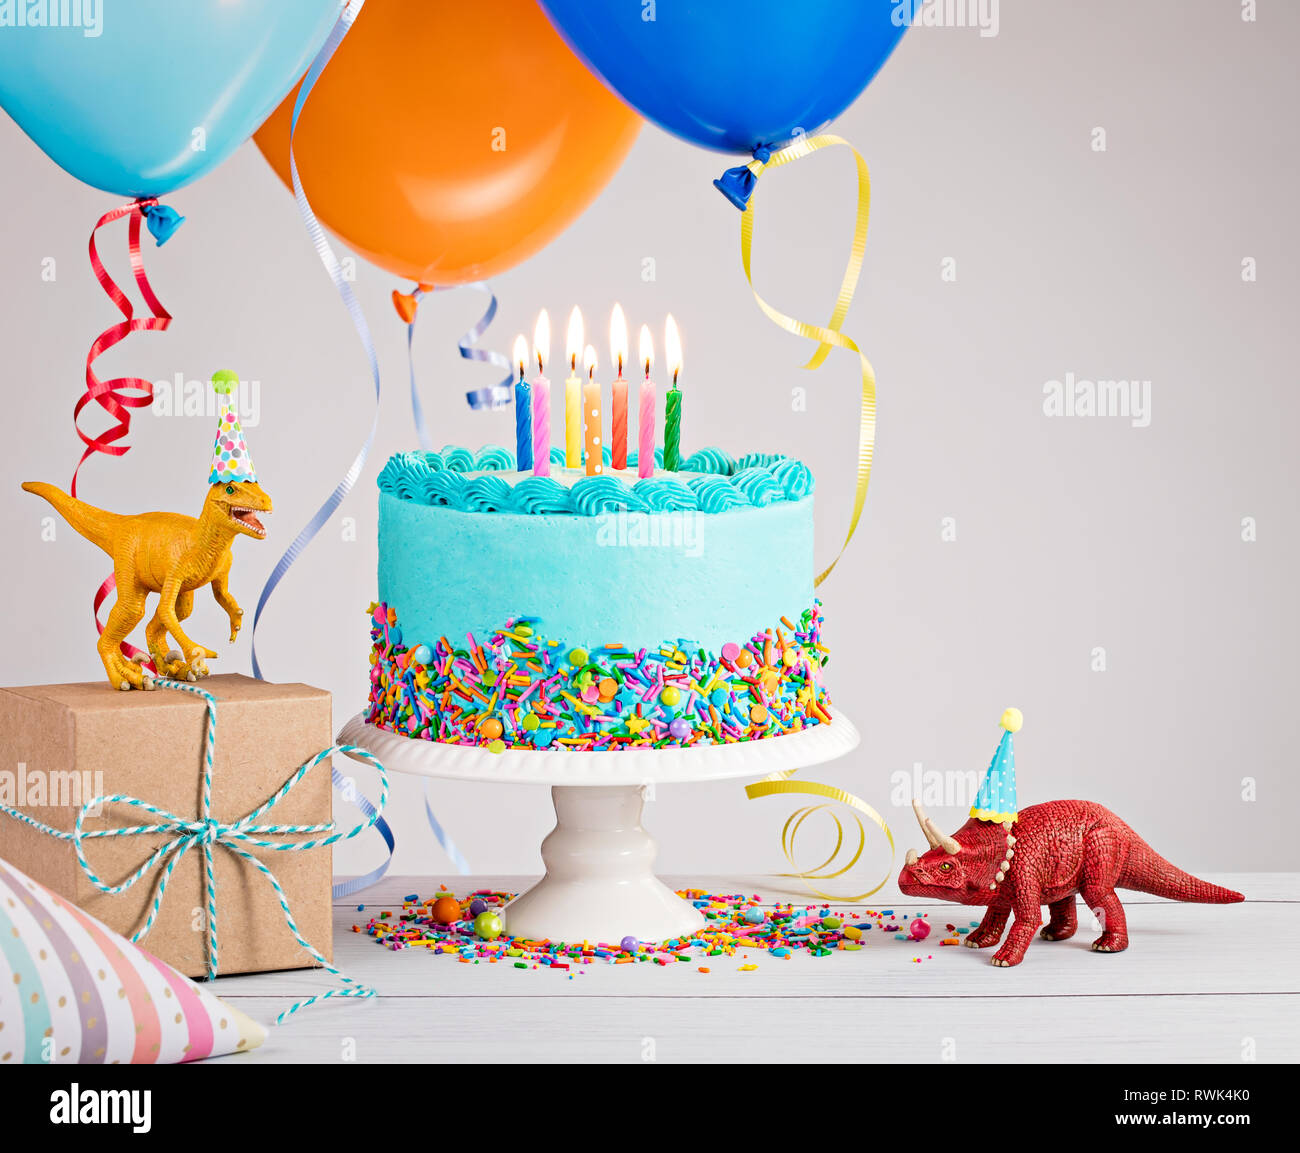 Fête d'anniversaire de Childs scène avec gâteau bleu, coffret-cadeau, tablet, chapeaux et plus de ballons colorés en gris clair. Banque D'Images